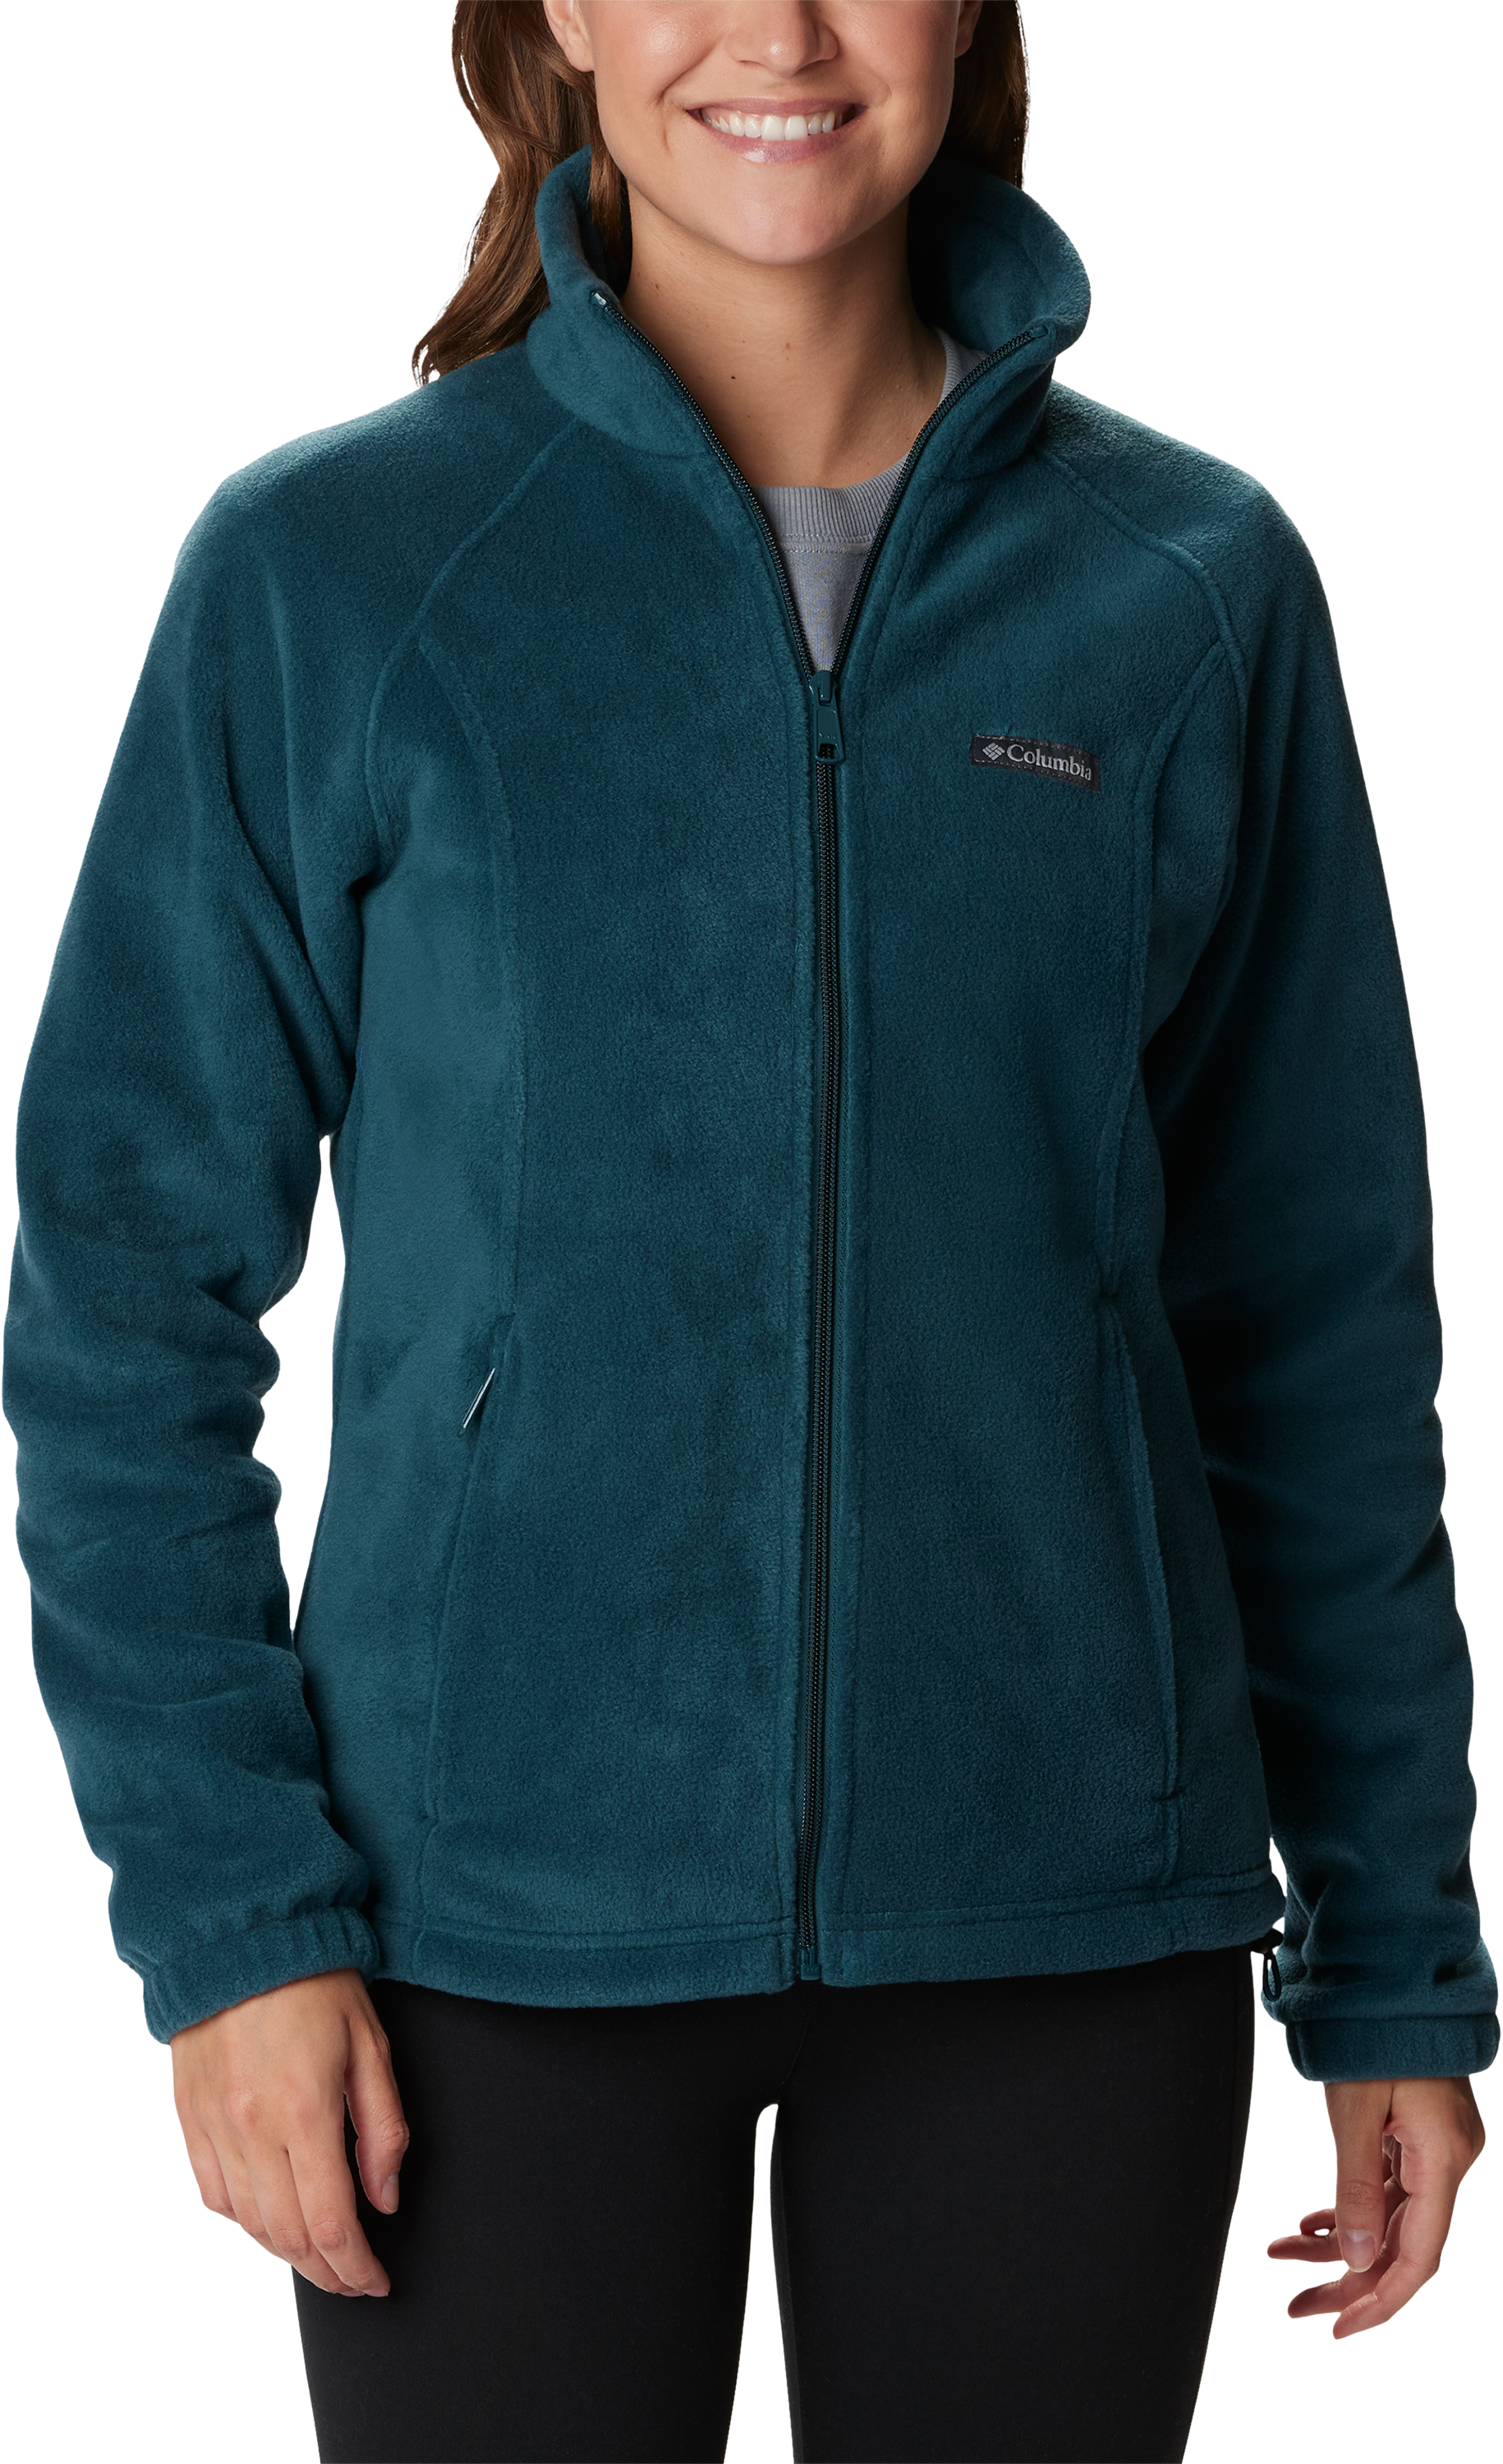 Columbia Benton Springs Full-Zip Fleece Jacket for Ladies - Night Wave - S